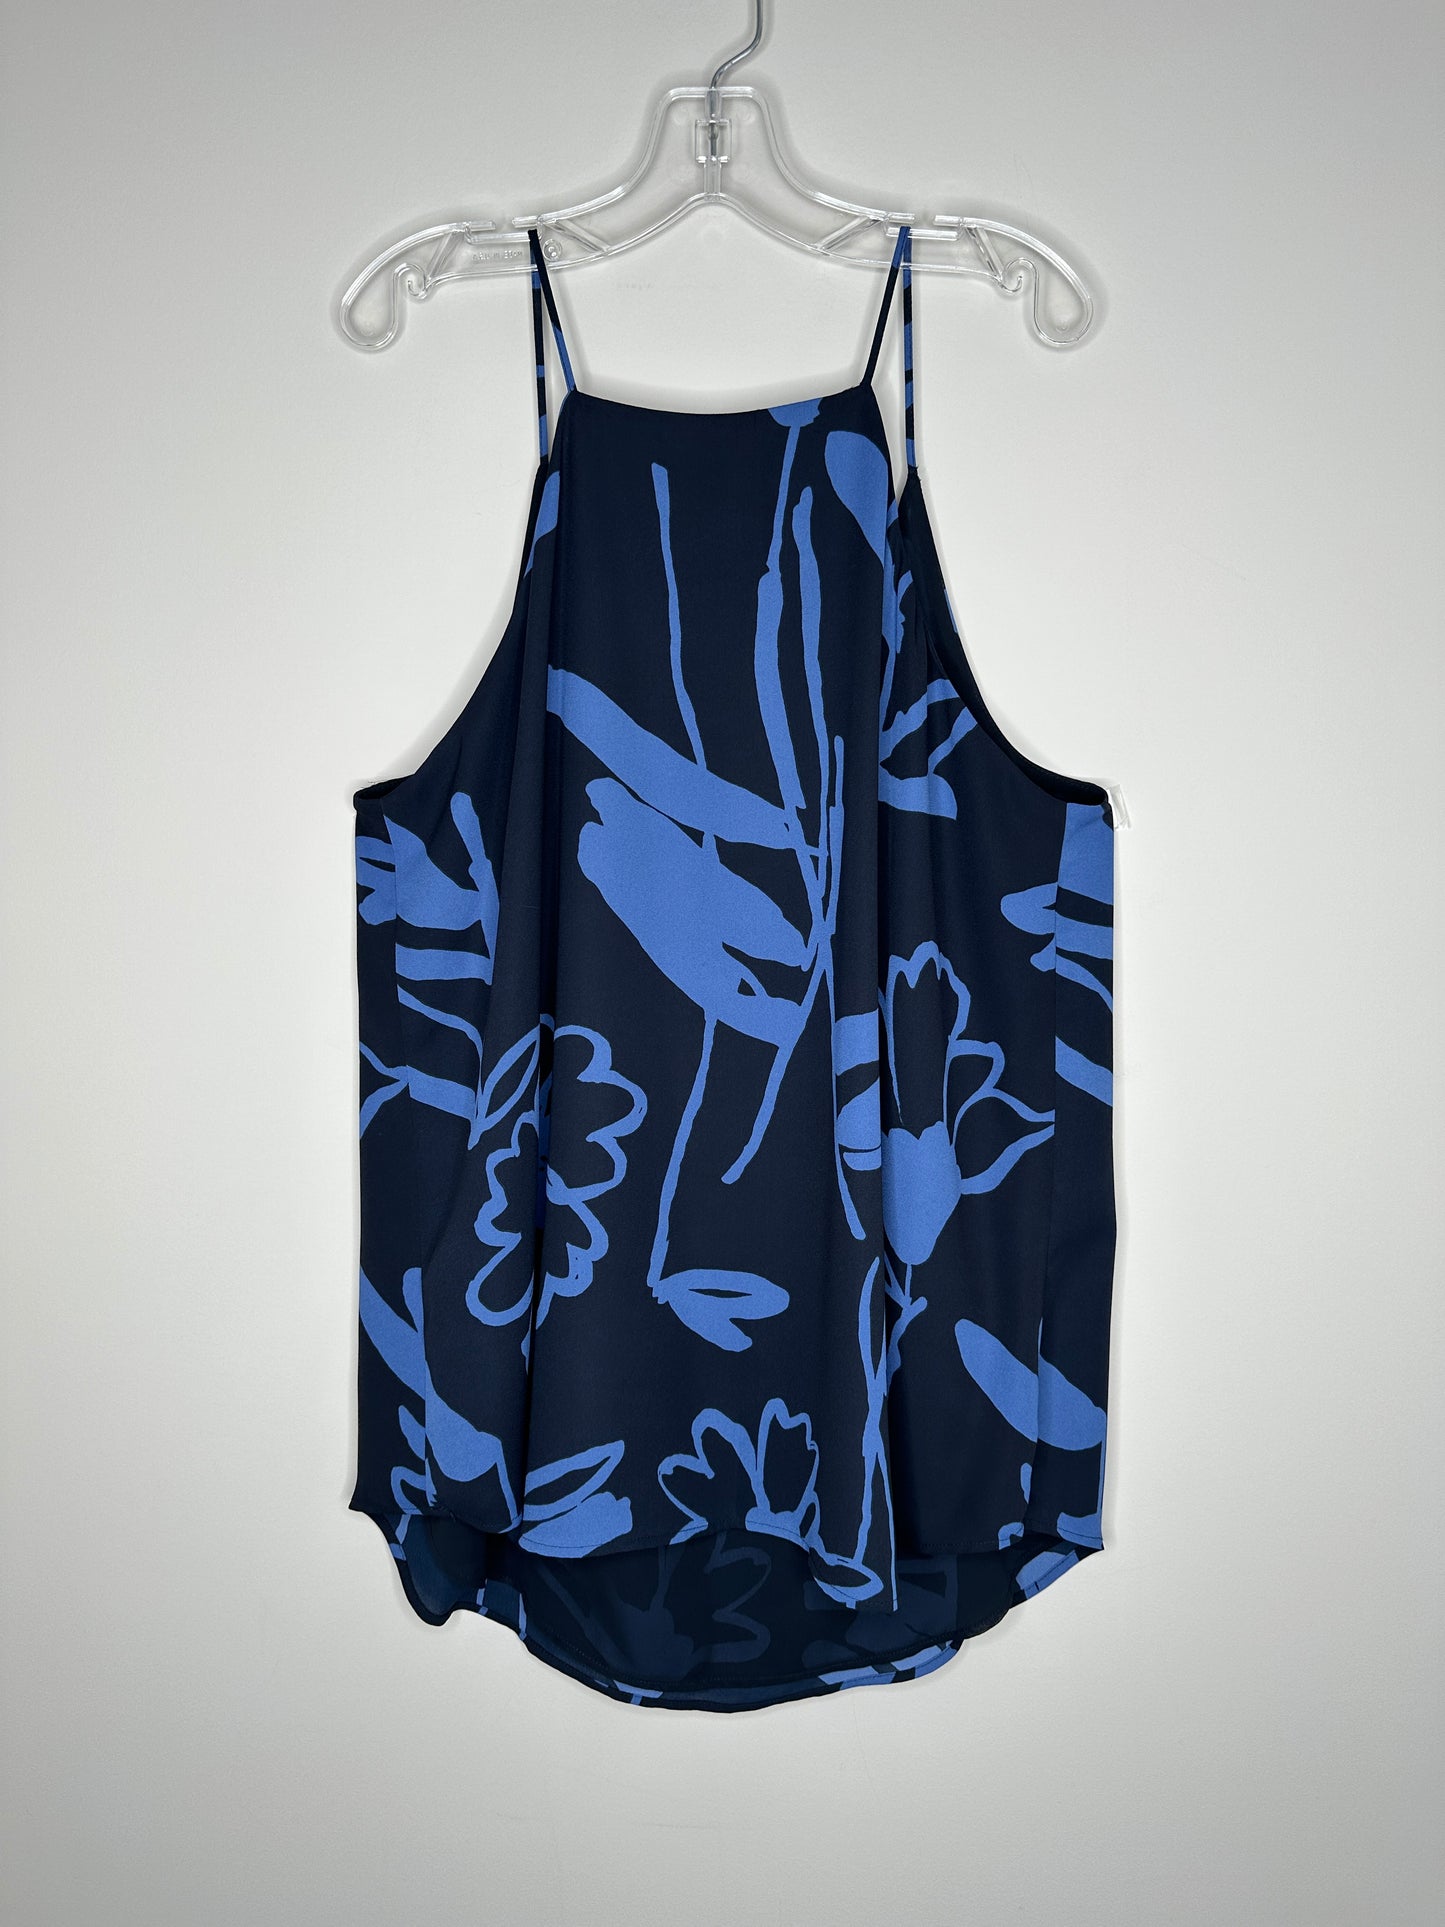 Ann Taylor LOFT Size LP Navy w/Blue Floral Pattern Spaghetti Strap Top